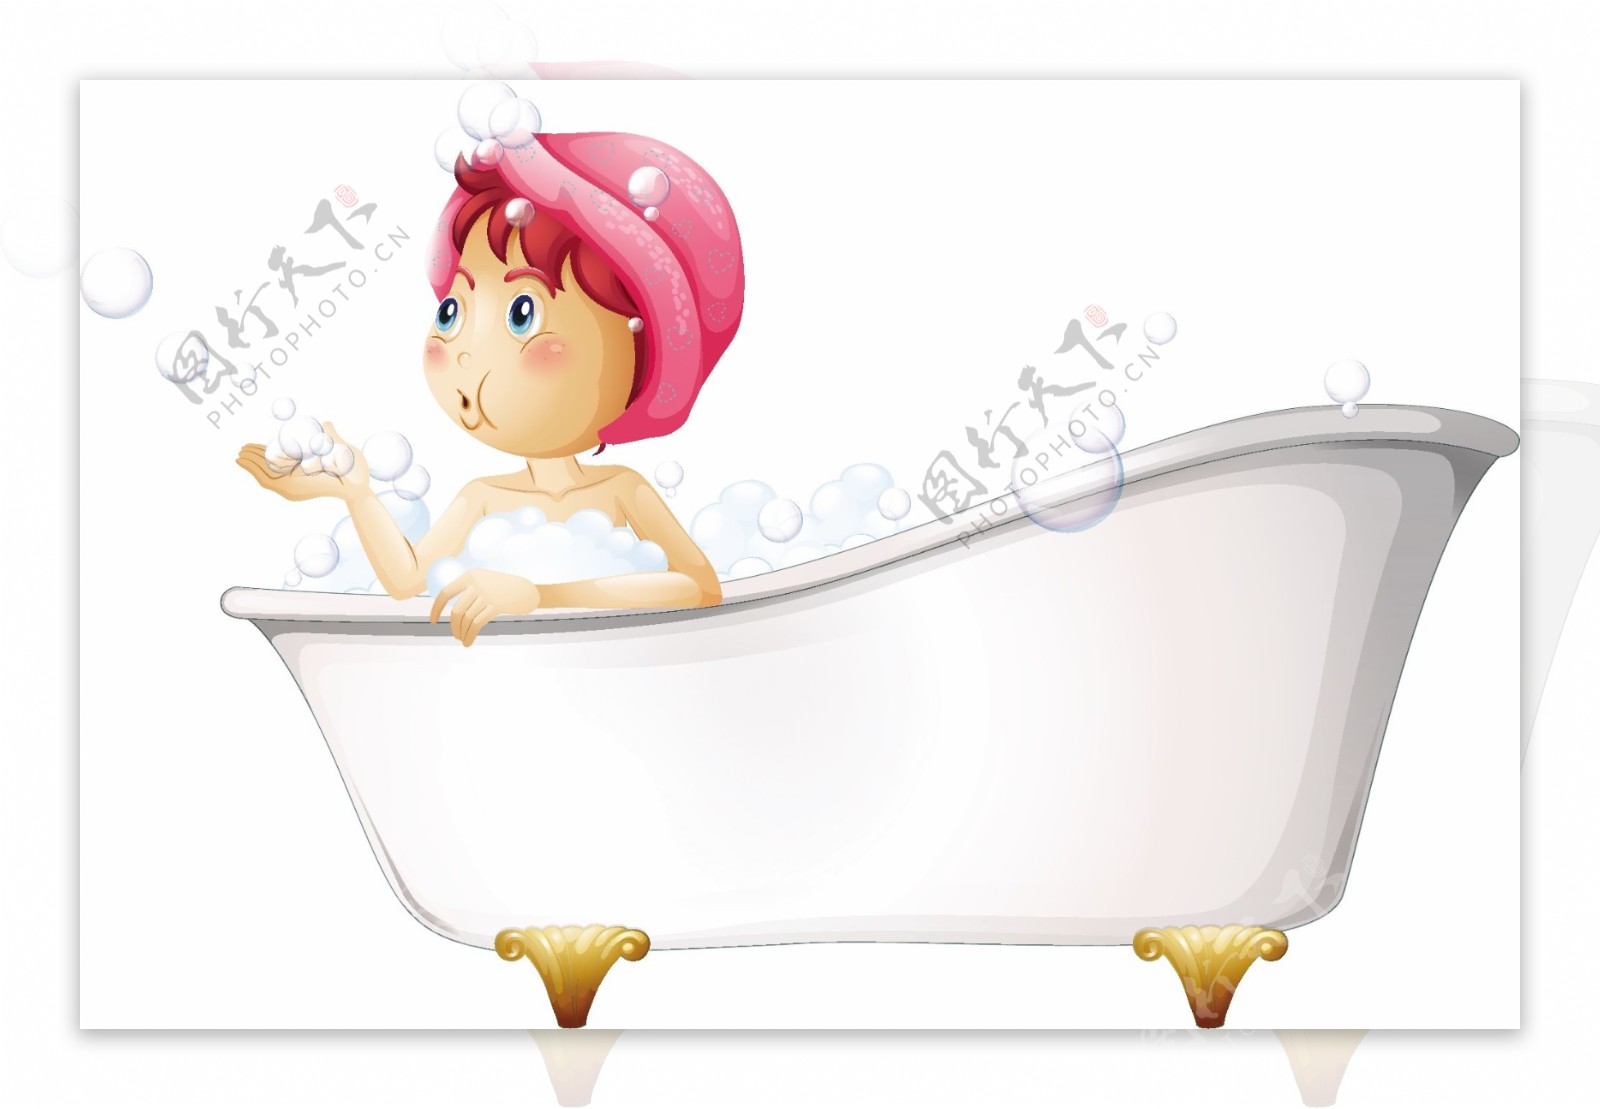 在网吧里面洗澡睡觉是一种什么感觉-中国BOY超级大猩猩-中国BOY超级大猩猩-哔哩哔哩视频